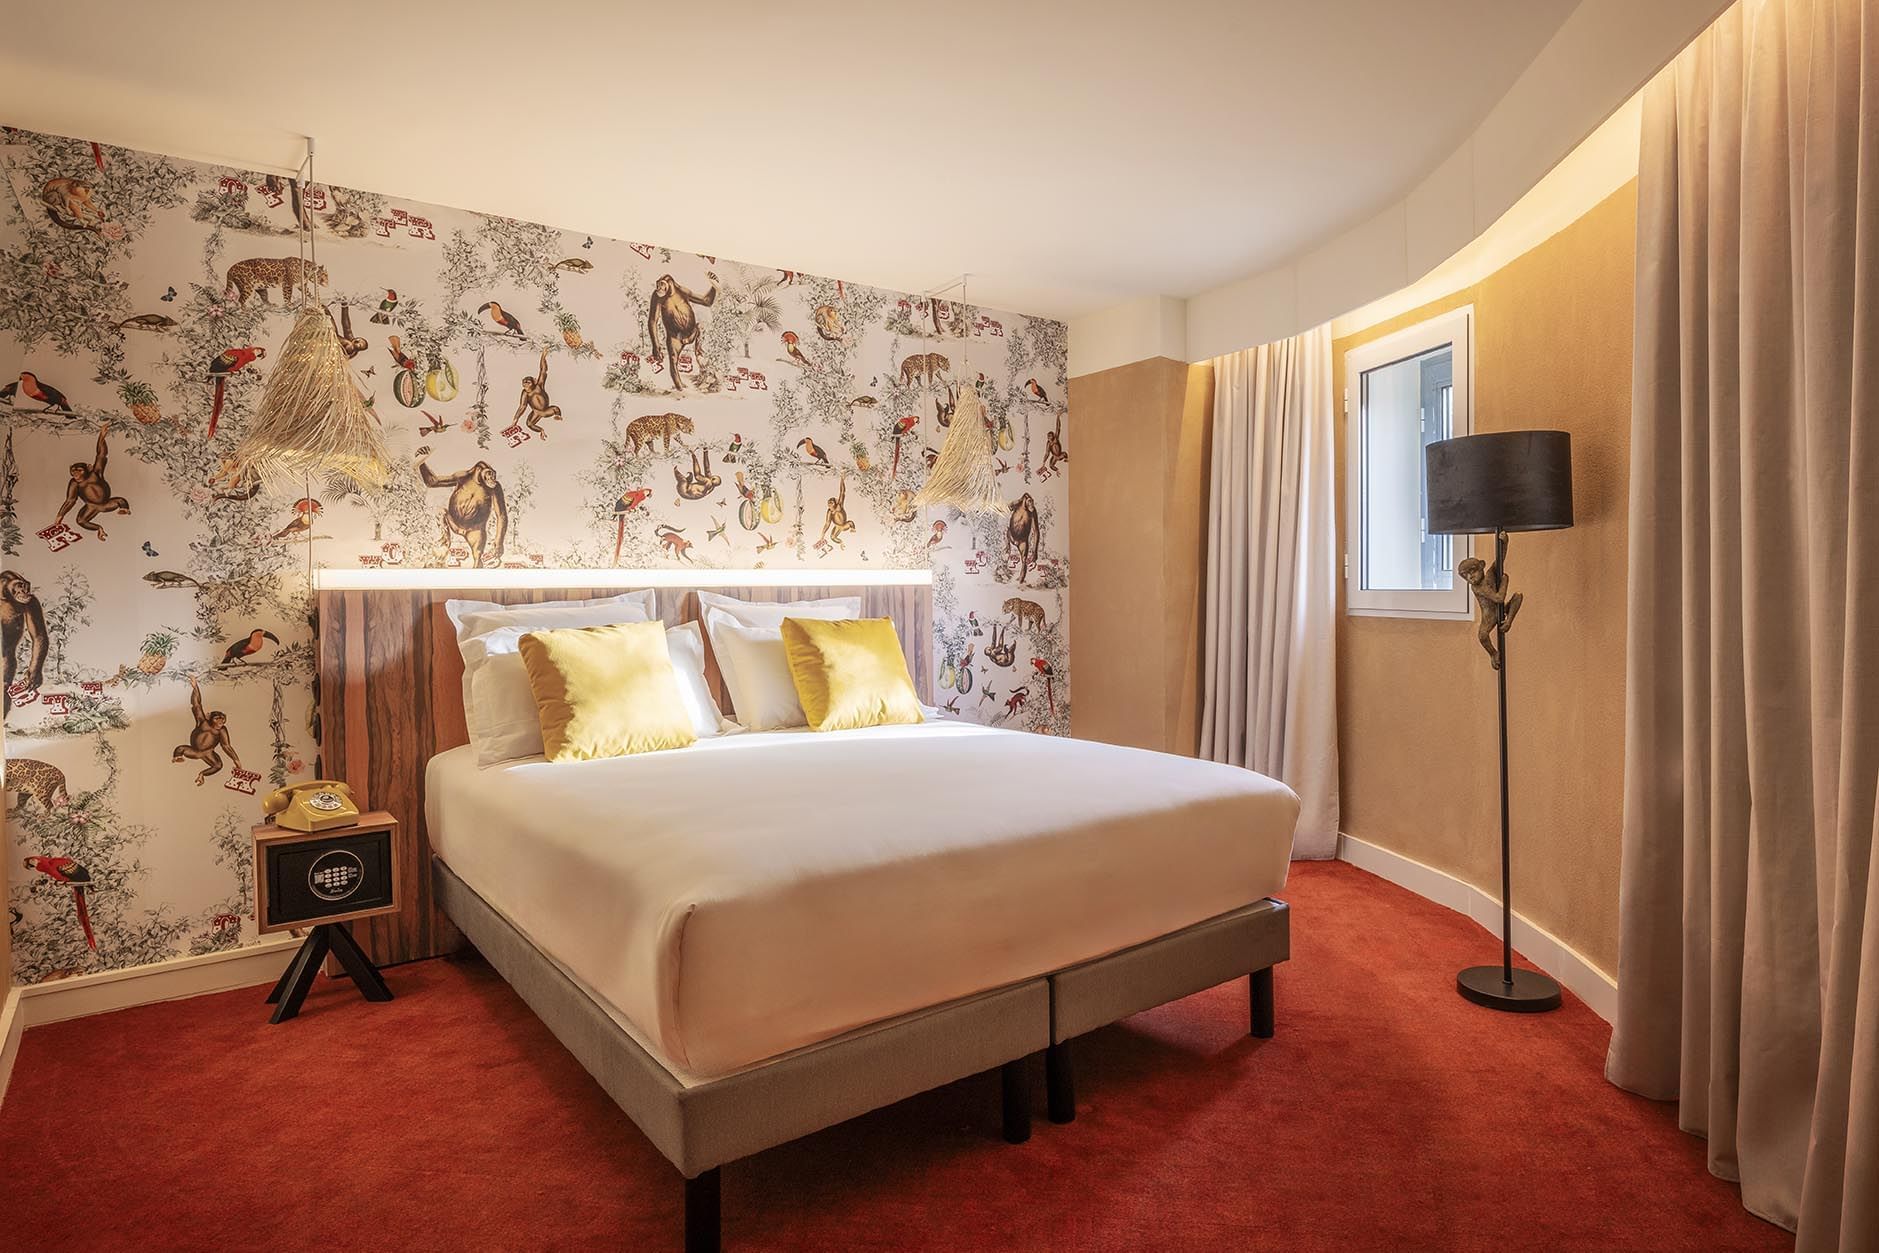 Kopster Hotel Paris Porte de Versailles - Accommodation